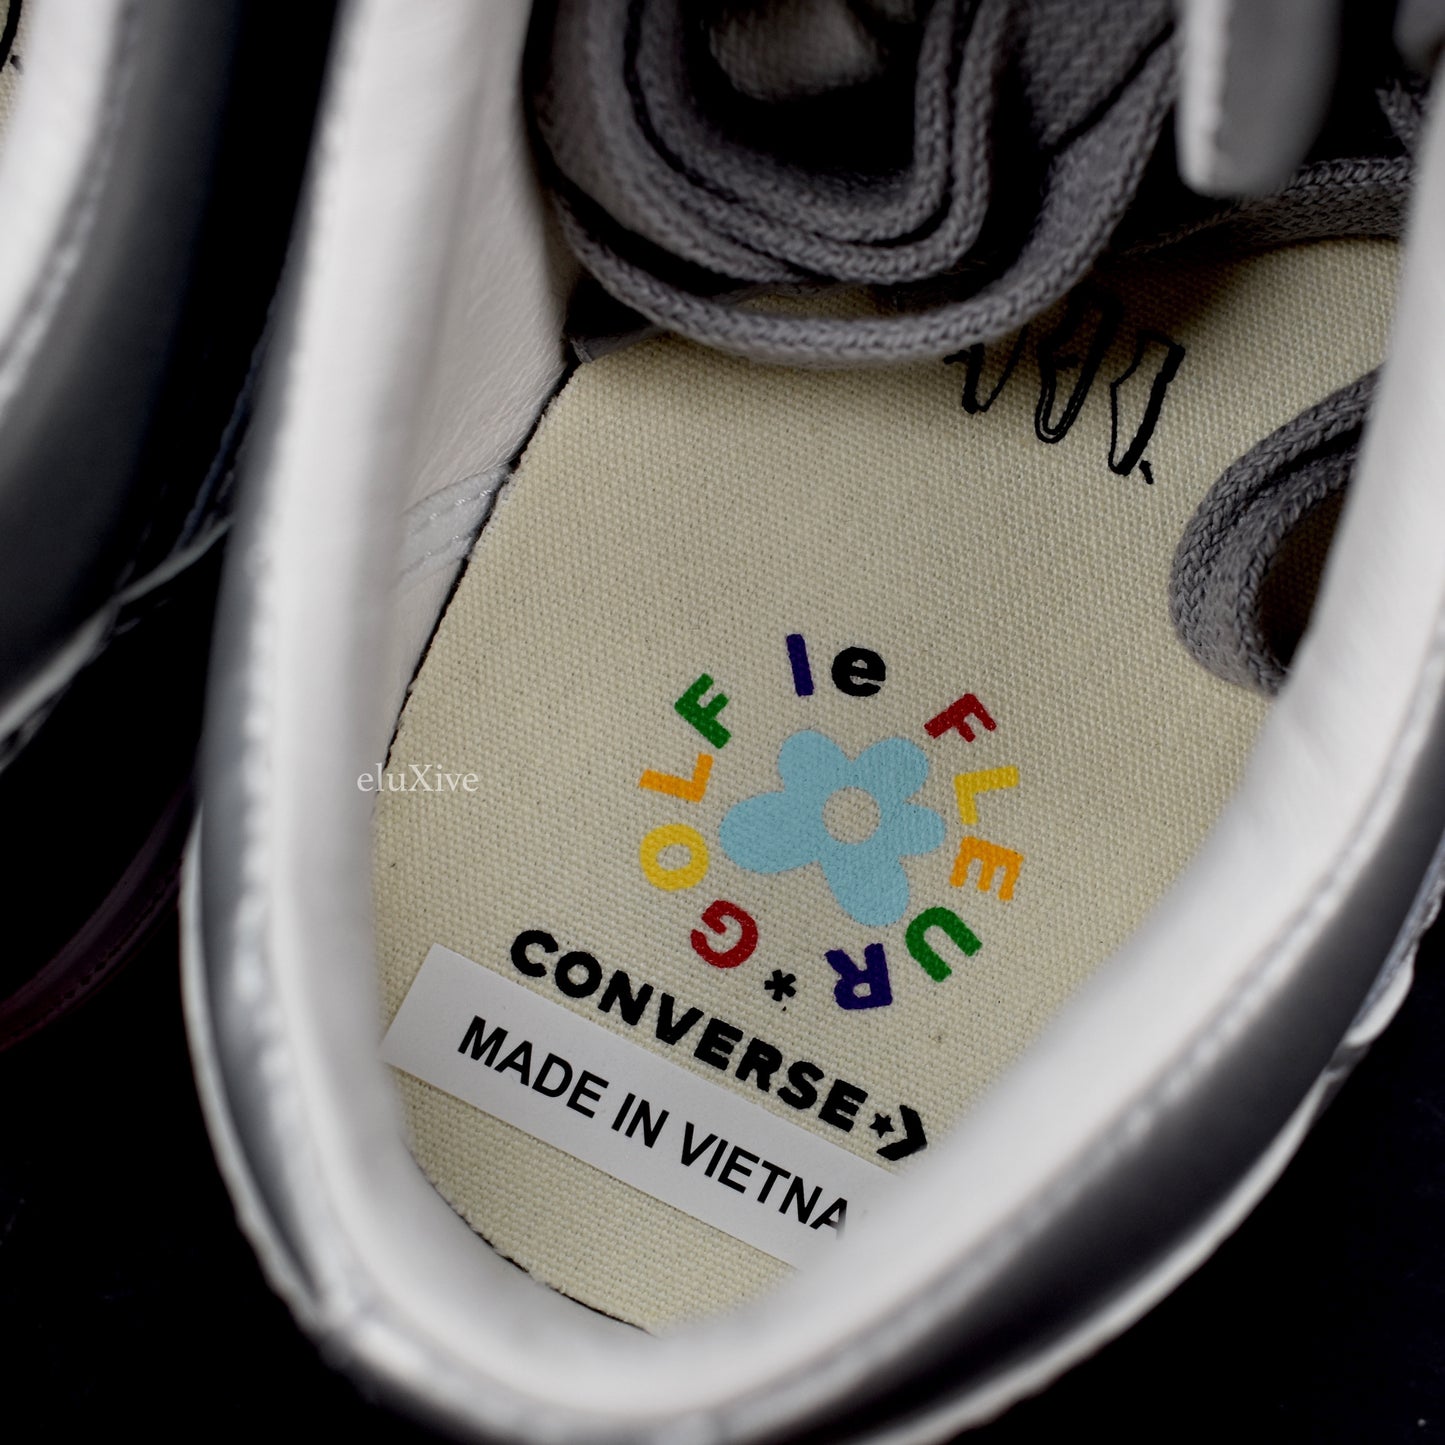 Converse - Golf Le Fleur '3M' Sneakers